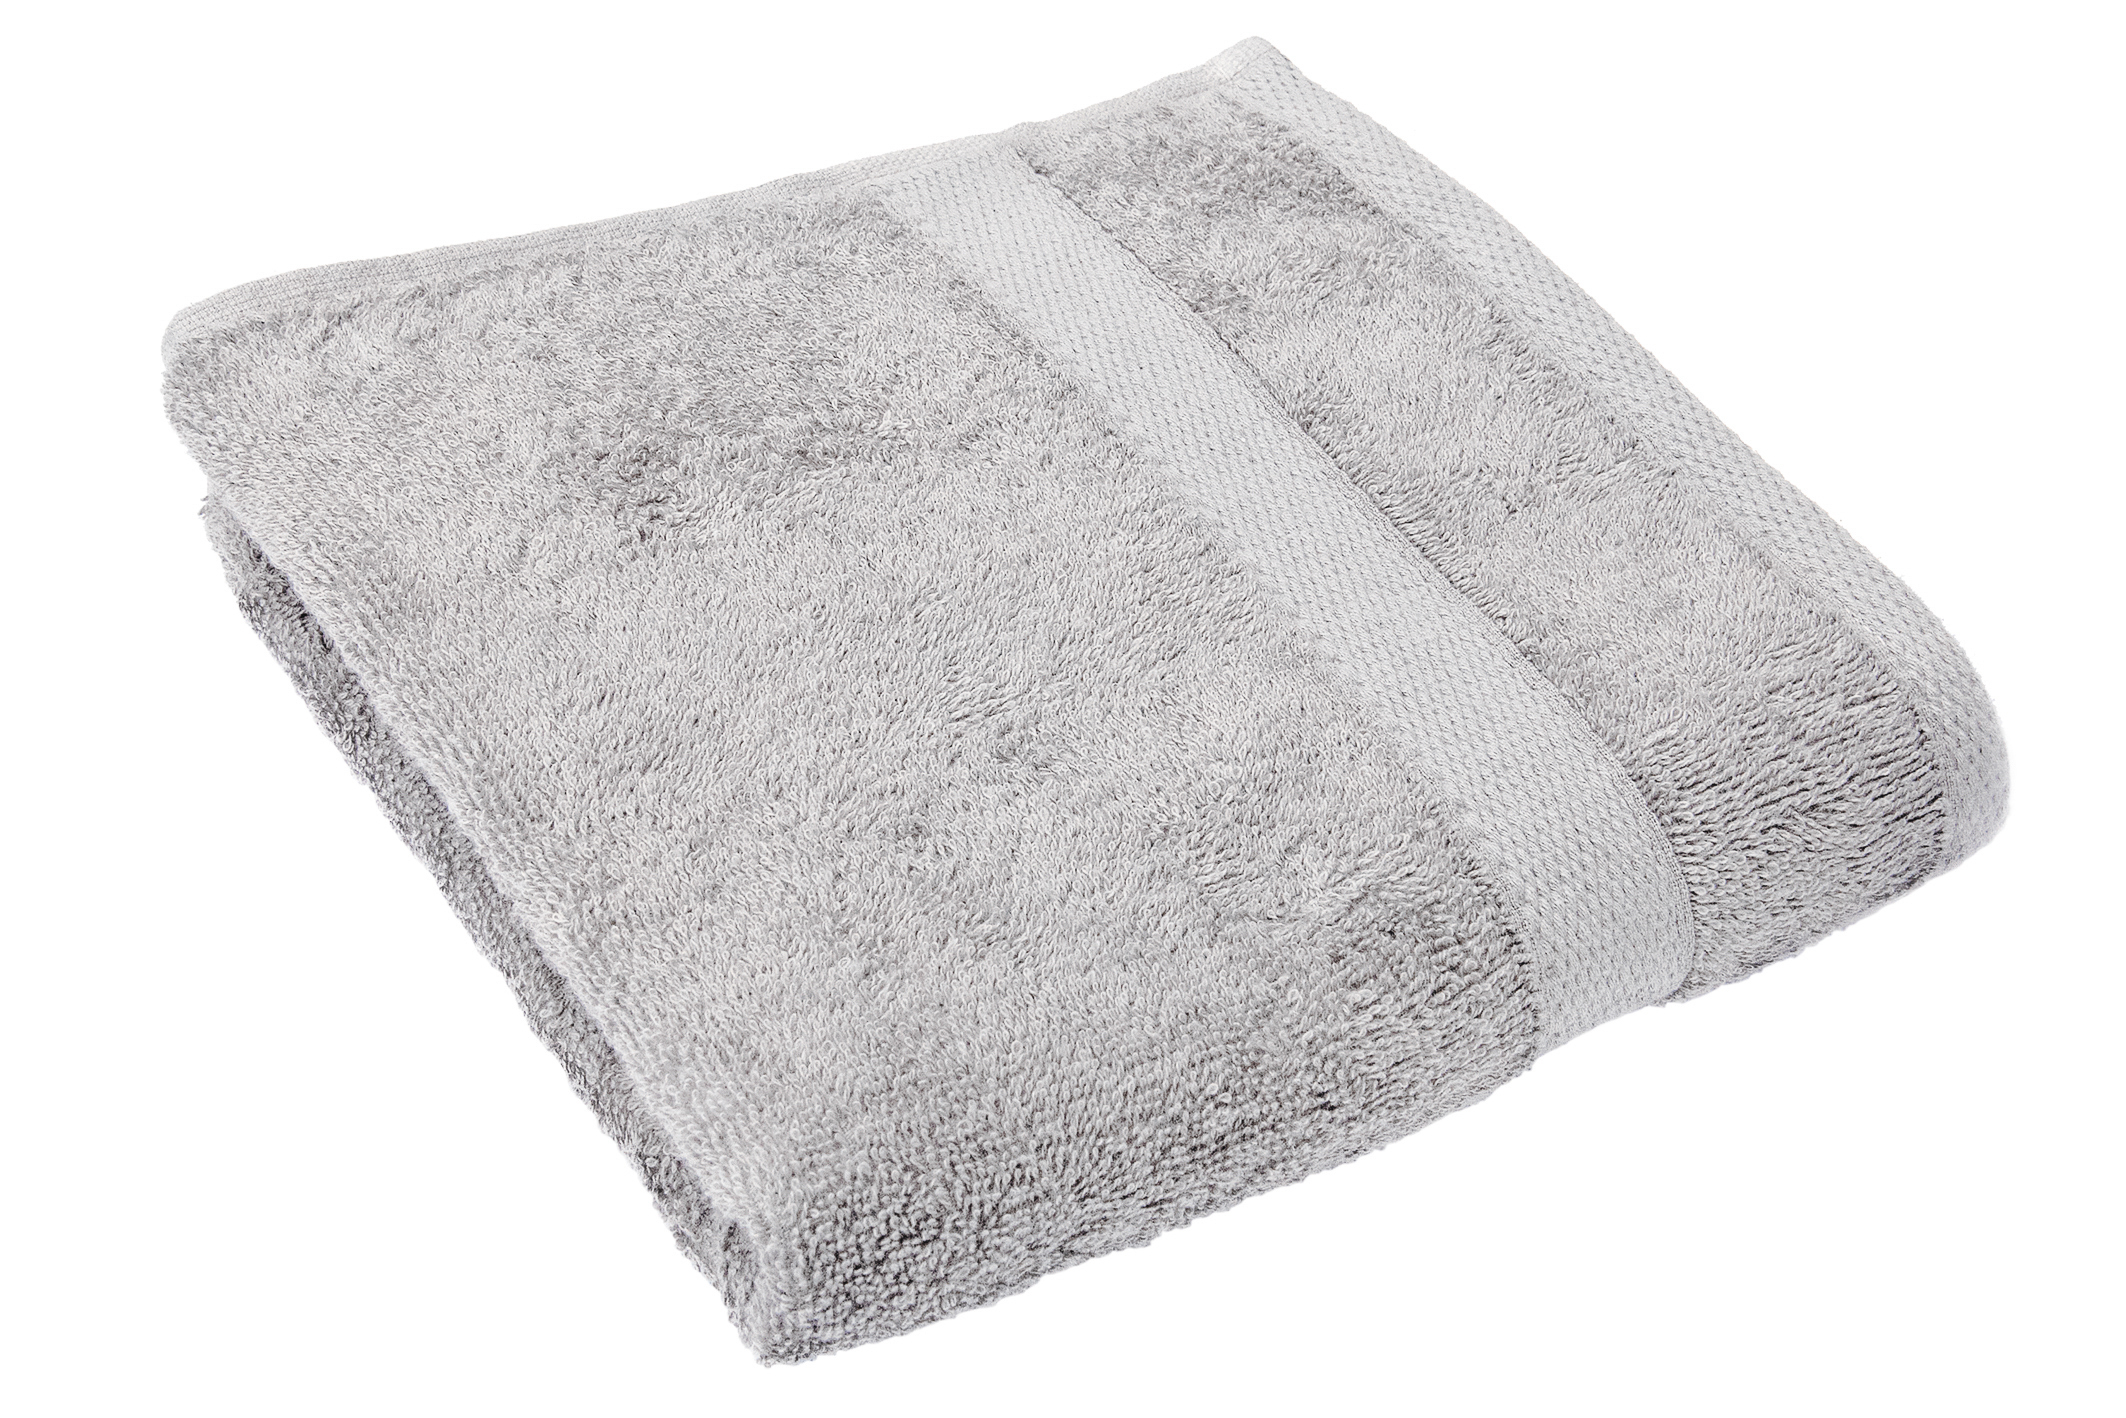 Bath towel 50x100cm, cool grey